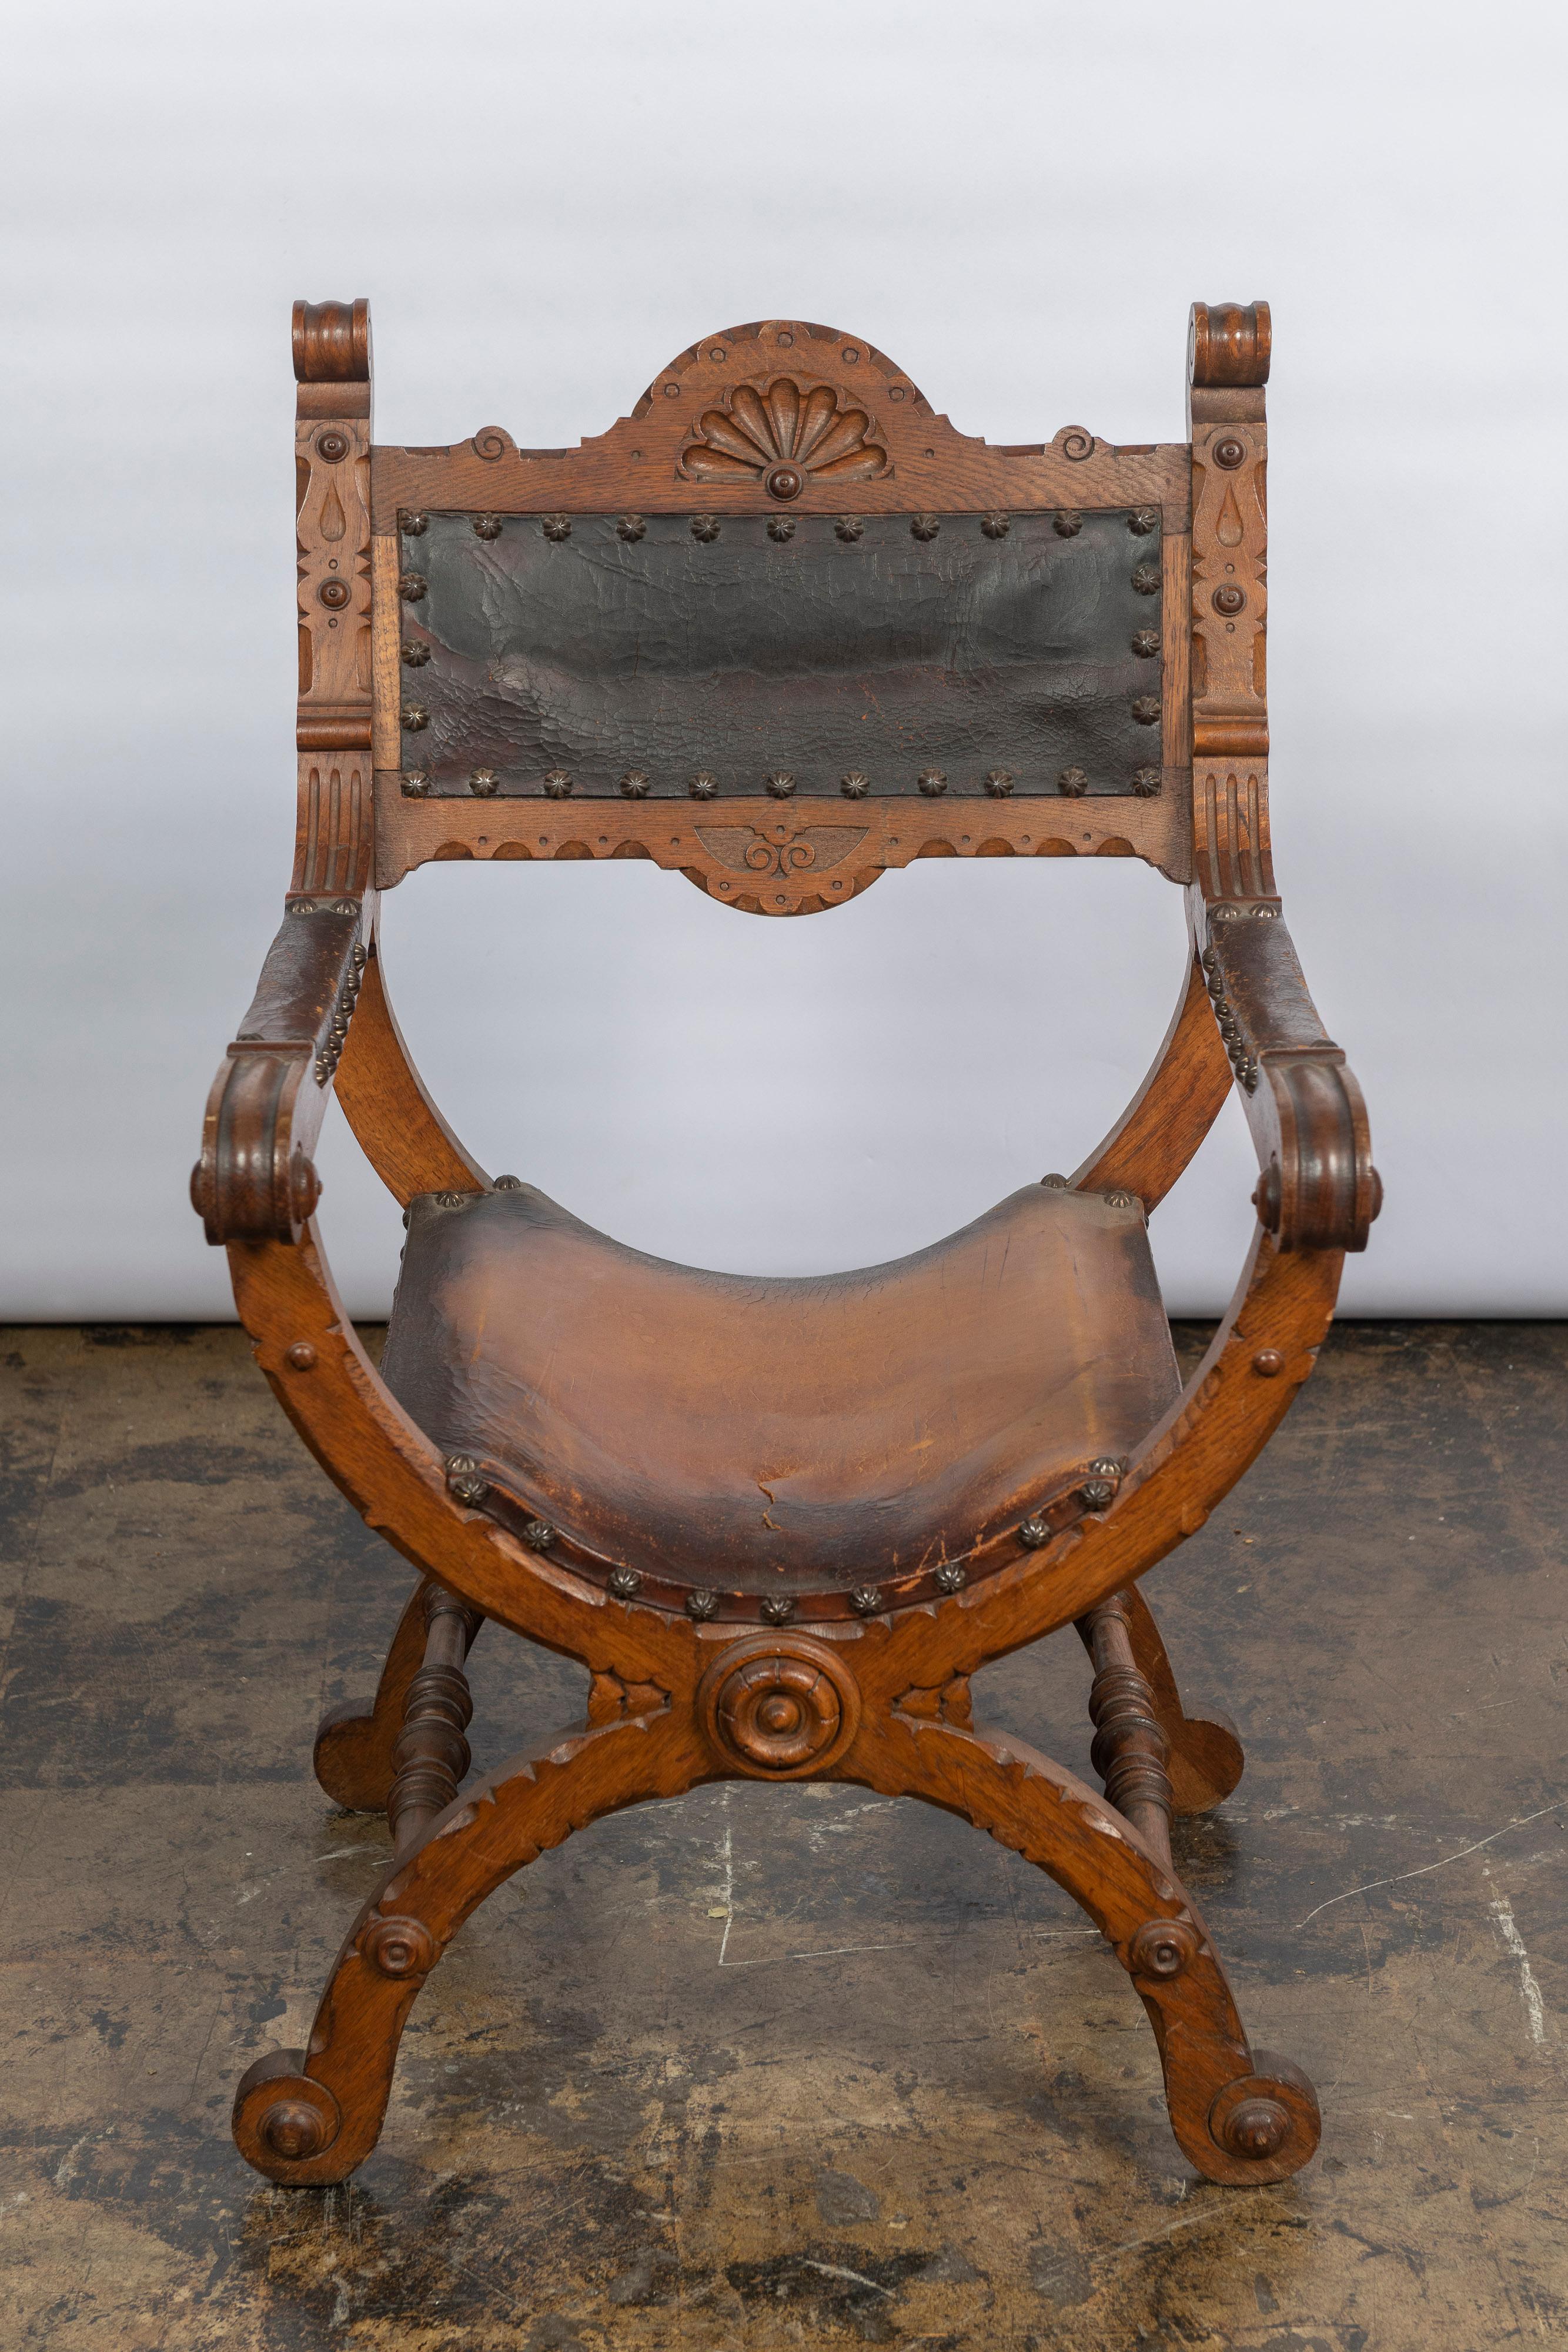 Ce style de chaise est souvent appelé chaise Dante ou Savonarola, faite de bois sculpté et de cuir de selle épais. Le cadre est en forme de X et la chaise est décorée d'une sculpture détaillée sur les accoudoirs, le dossier et le centre frontal des